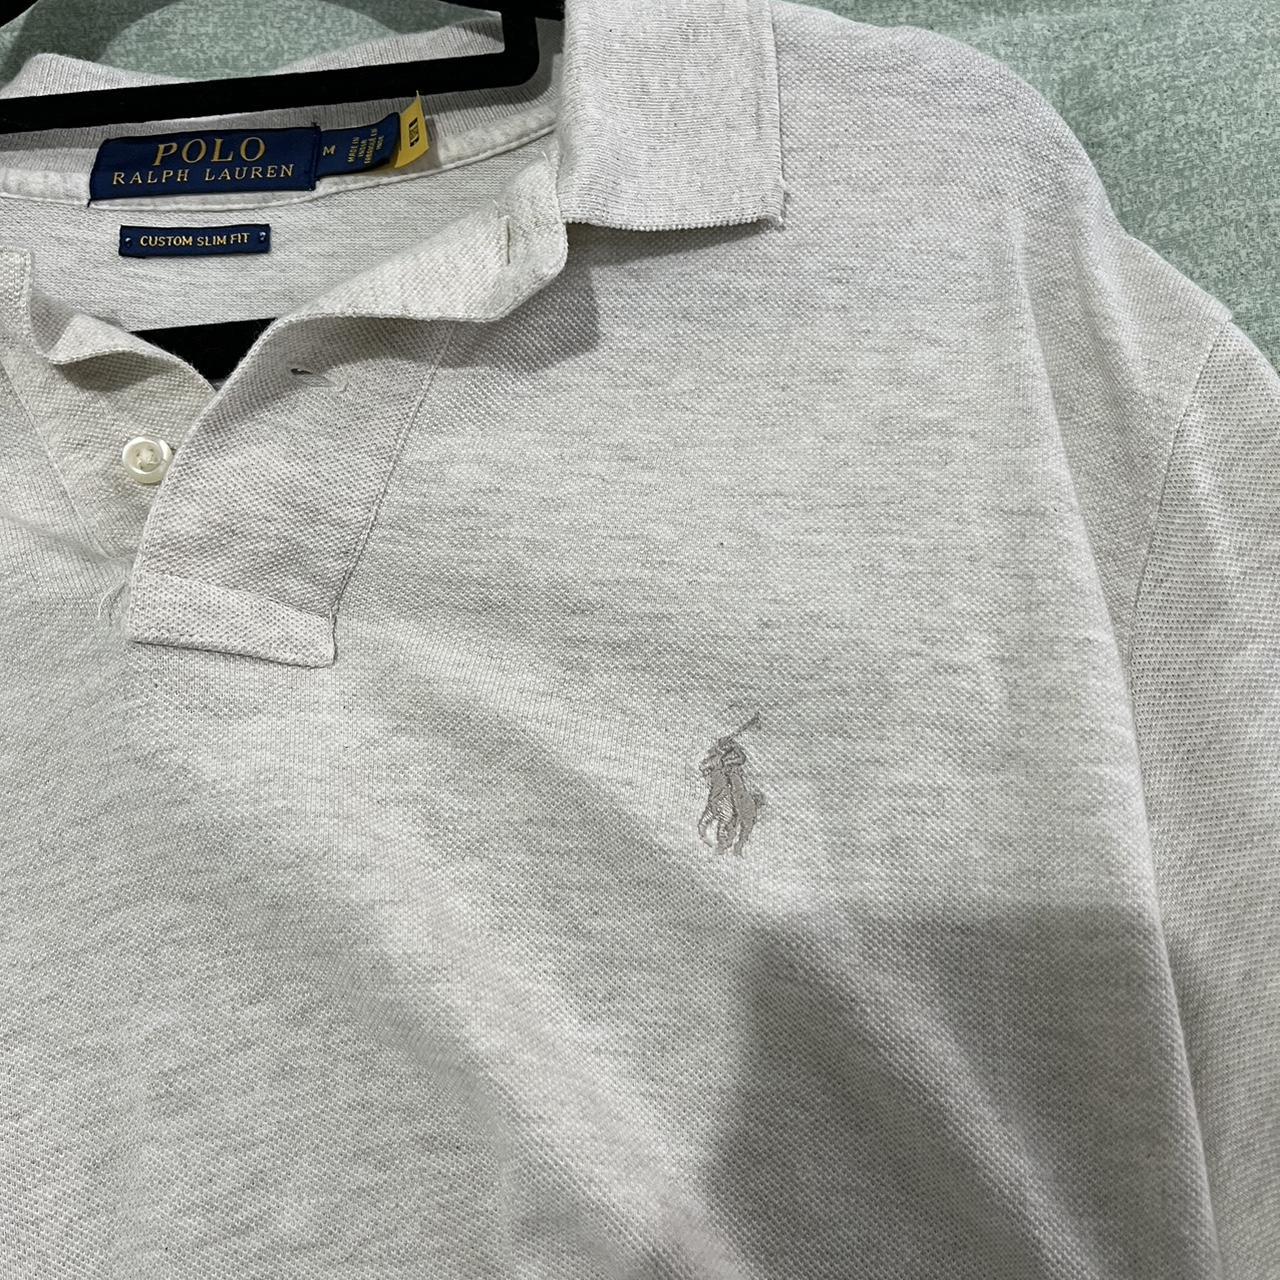 Ralph Lauren Polo Shirt Size M - Depop